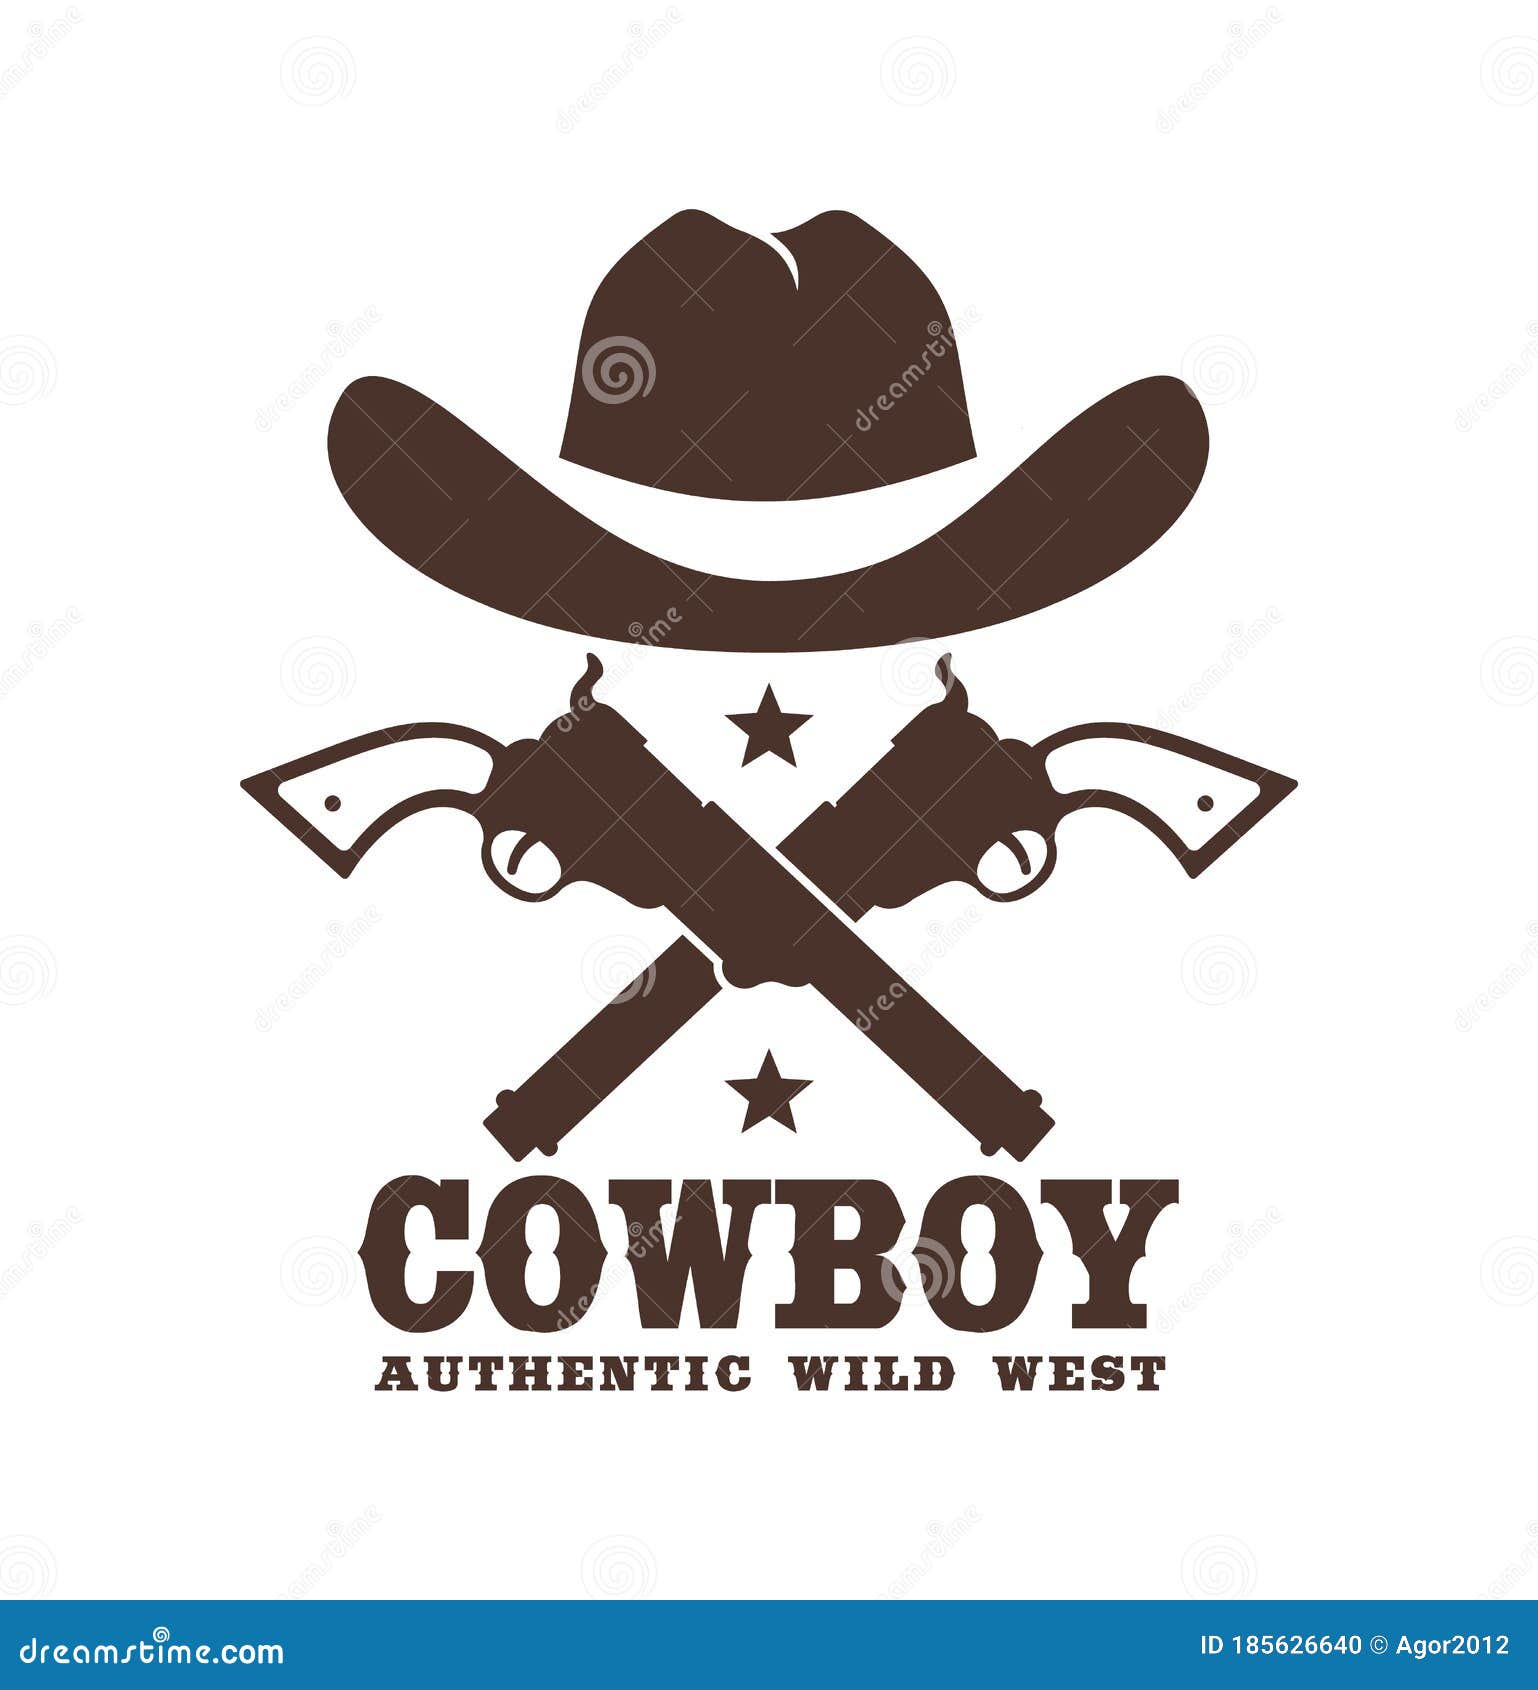 Chapeaux country western, chapeaux cowboy - Authentics Dreams